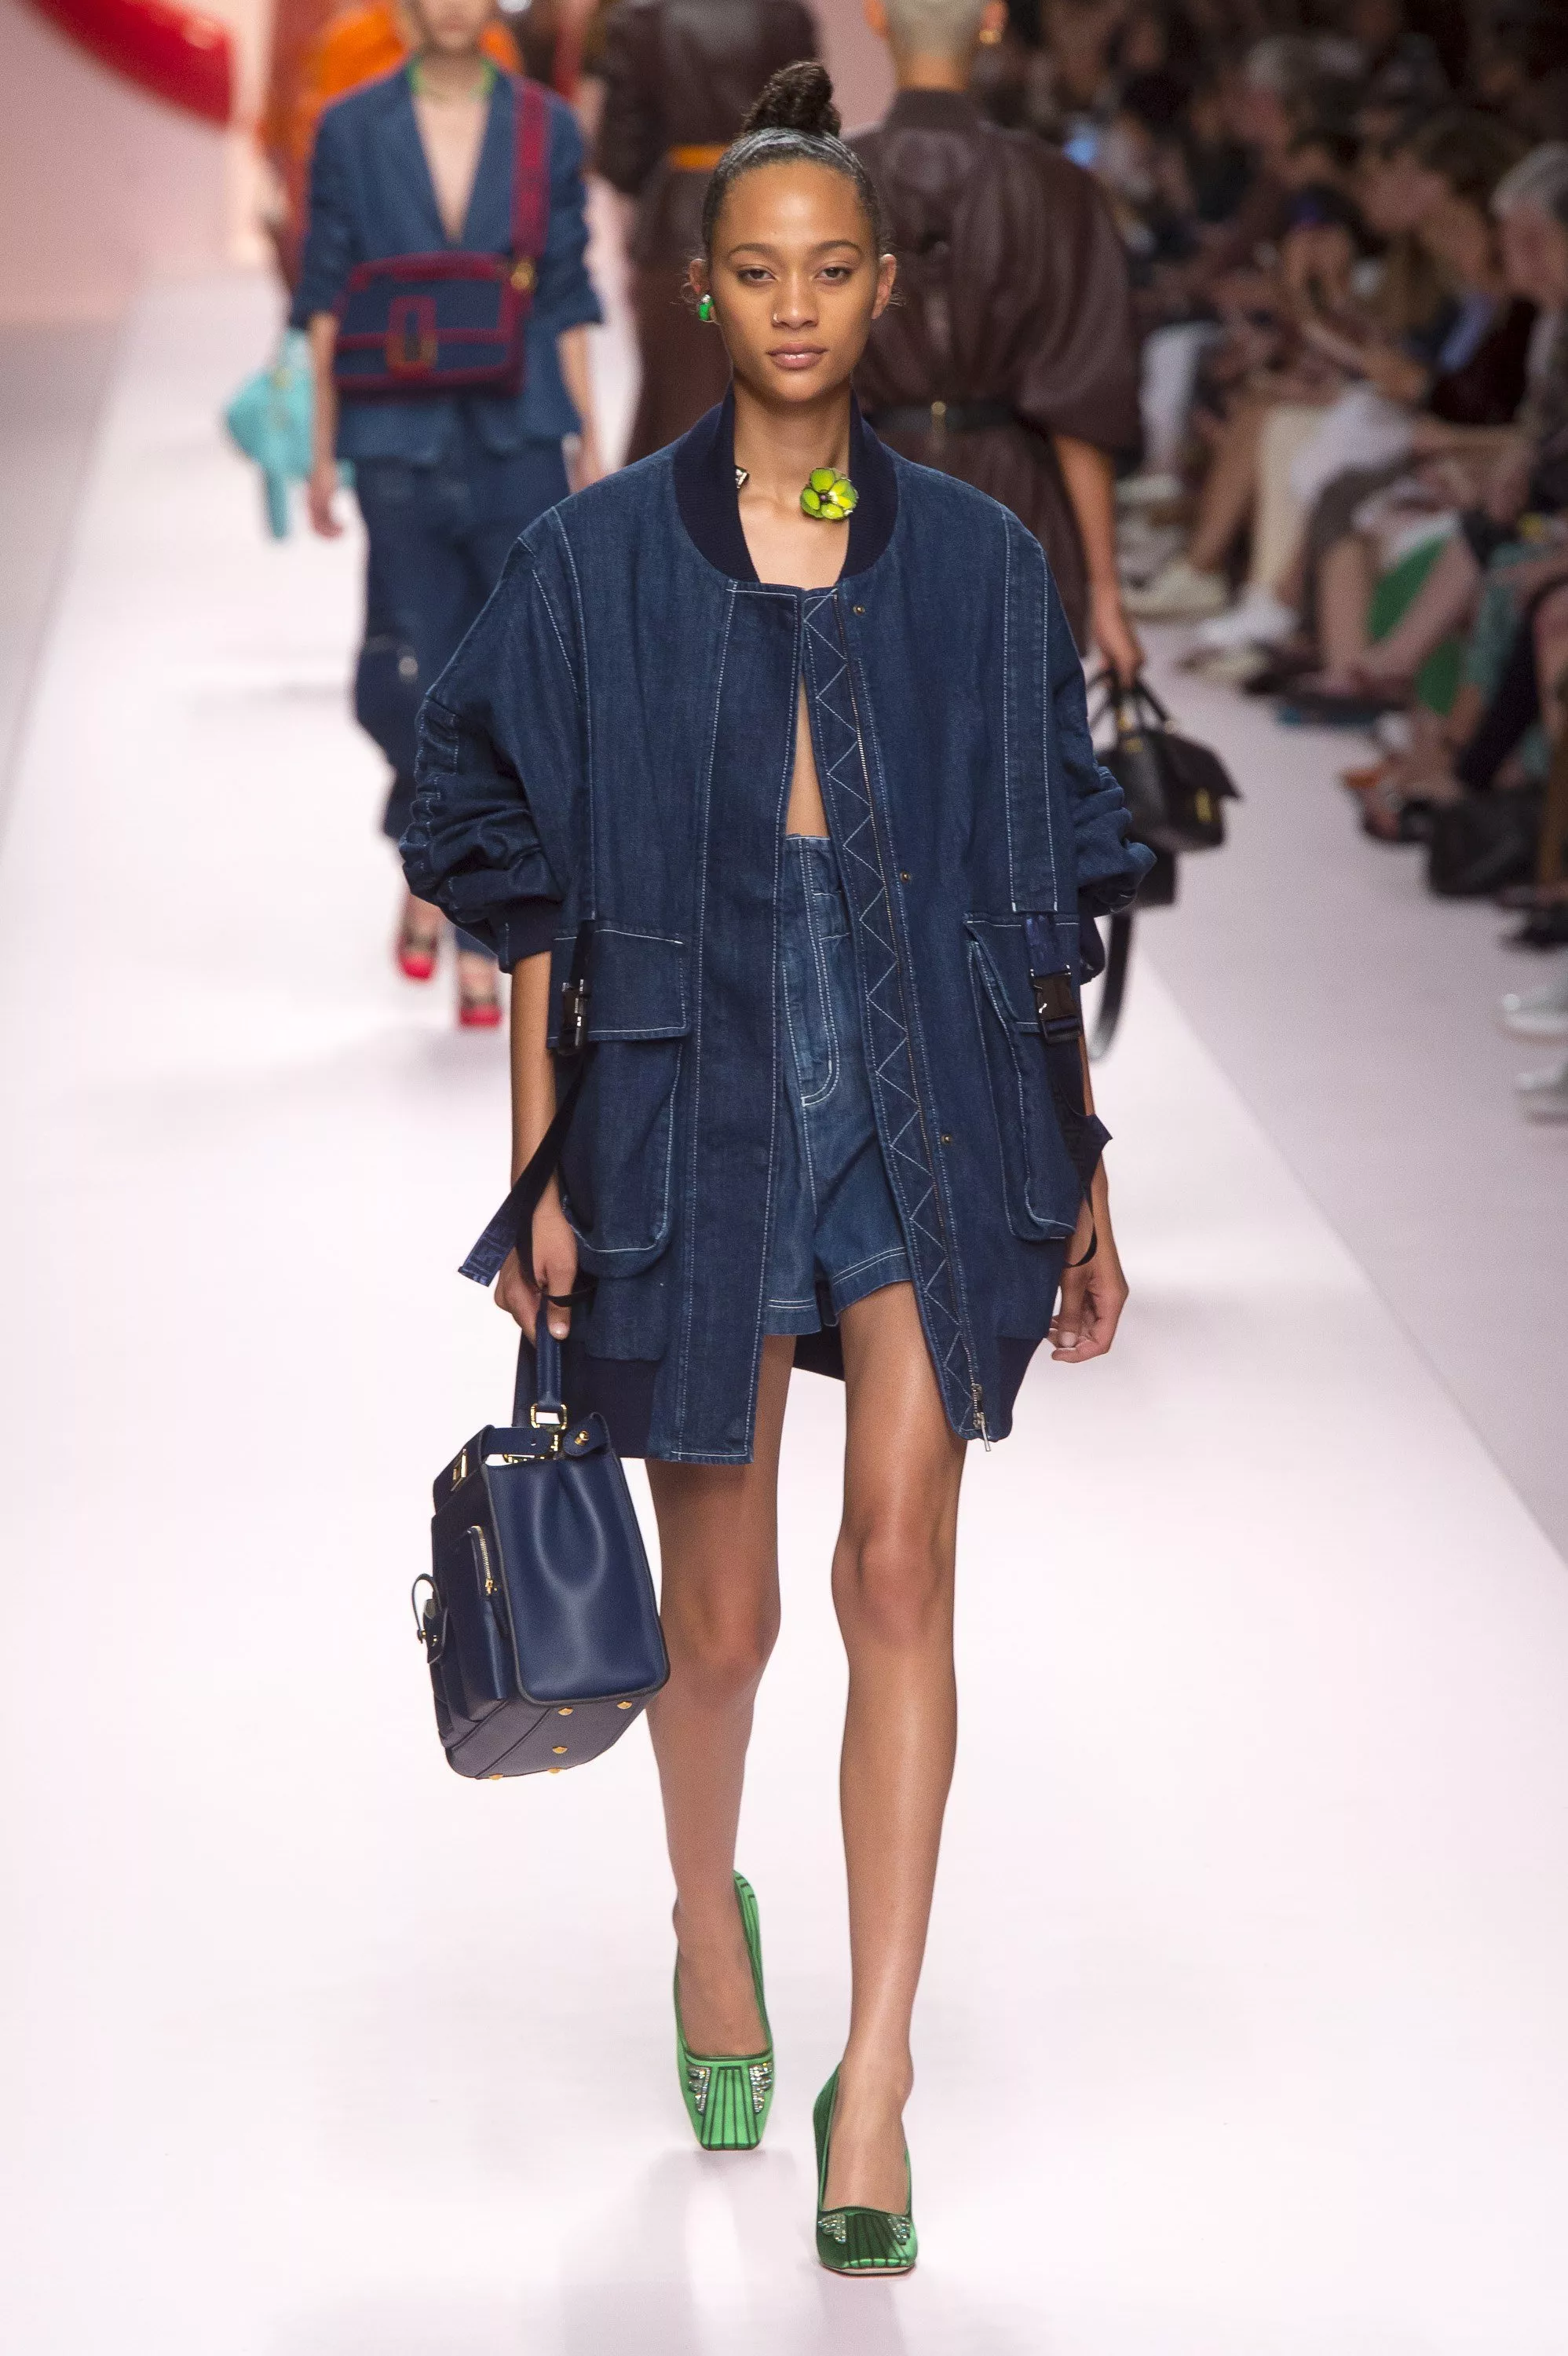 عرض Fendi لربيع 2019 ضمن أسبوع الموضة في ميلانو: جيب هائلة وأسلوب أقرب إلى واقع المرأة المشغولة